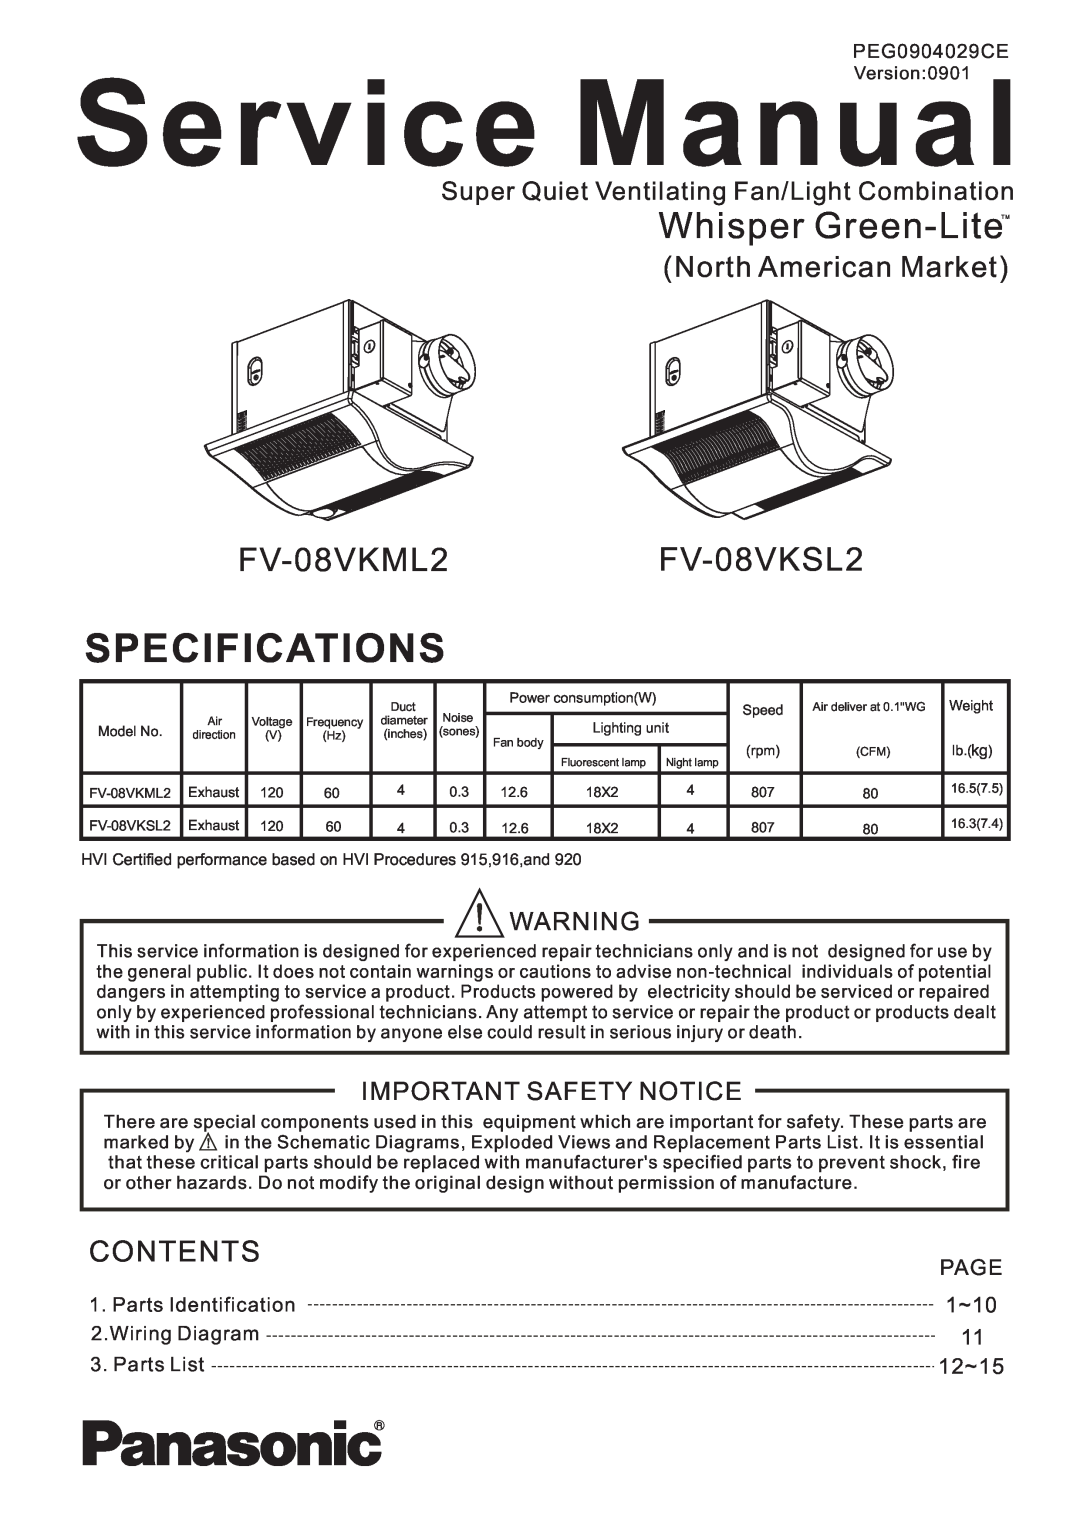 Panasonic service manual FV-08VKML2FV-08VKSL2, Super Quiet Ventilating Fan/Light Combination, Important Safety Notice 